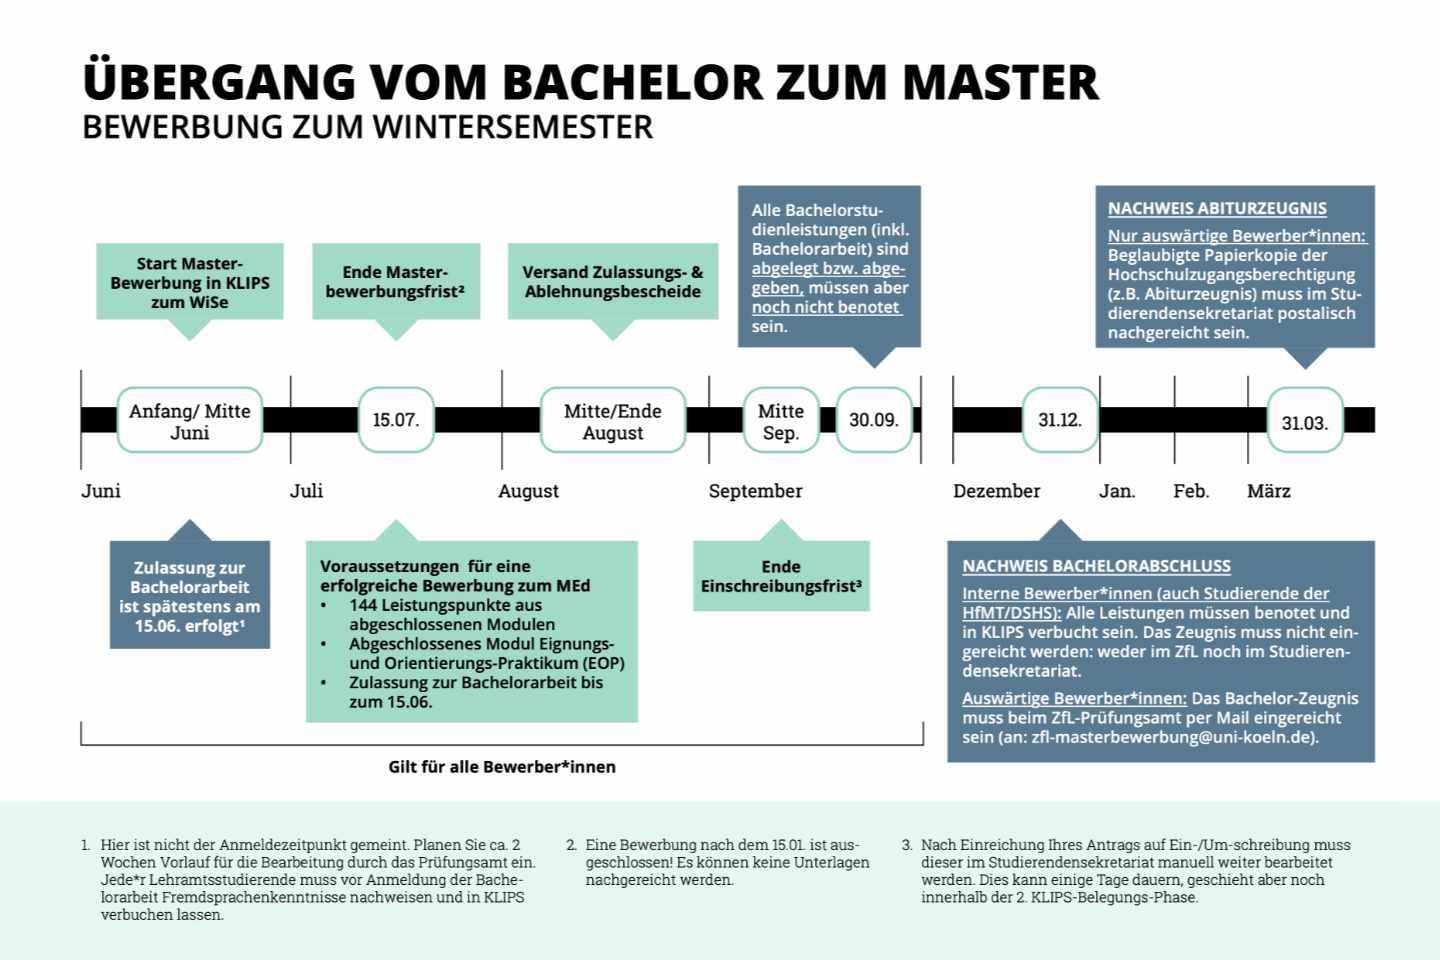 Grafik zum zeitlichen Verlauf im Wintersemester des Übergangs vom Bachelor in den Master im Lehramtsstudium